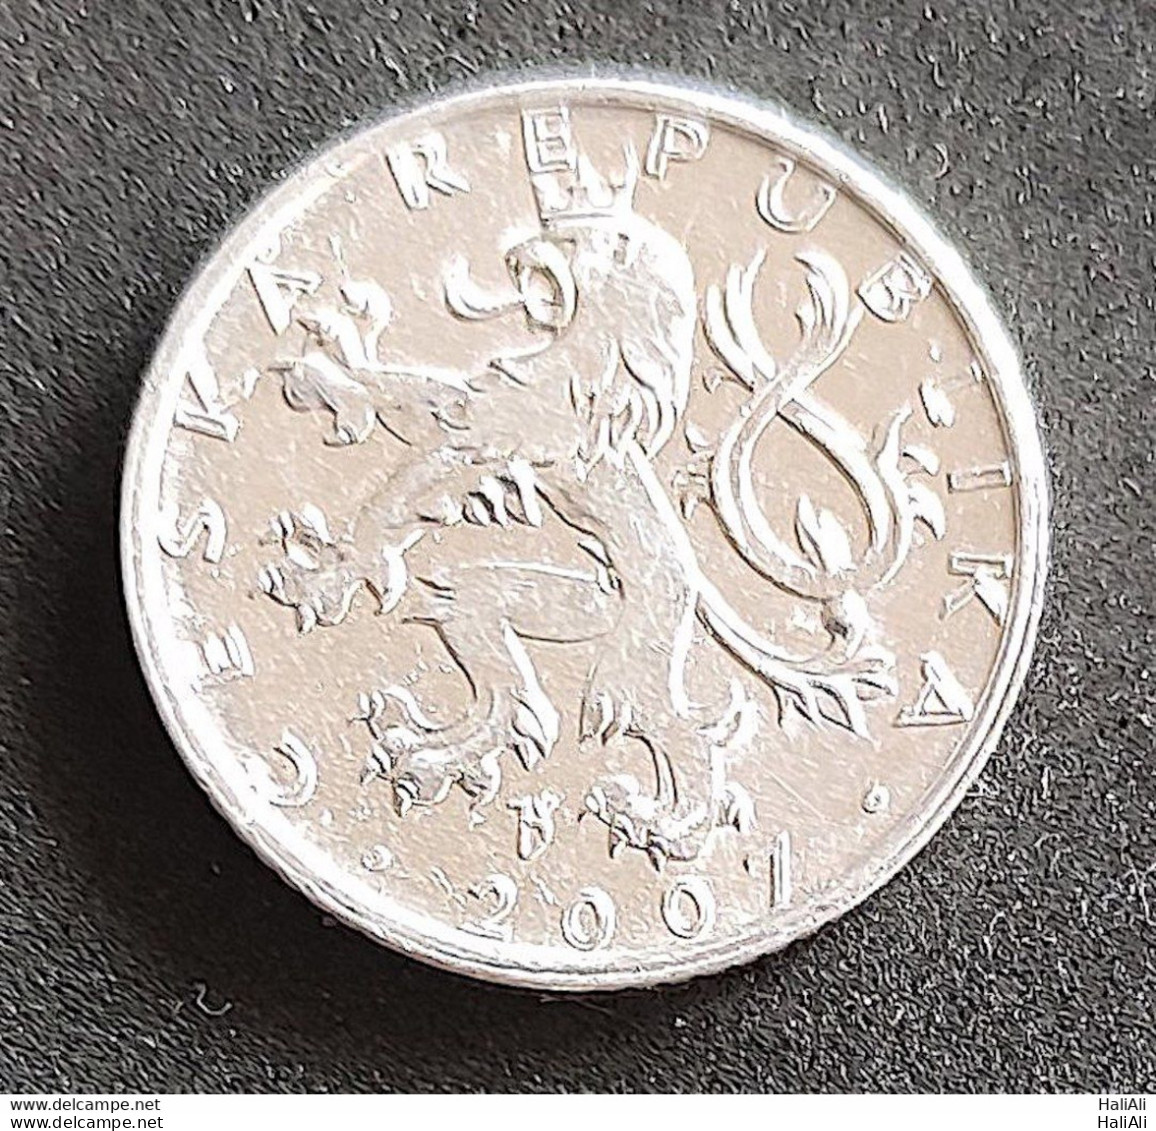 Coin Czech Repubilc 2007 50 Korun 1 - Czech Republic